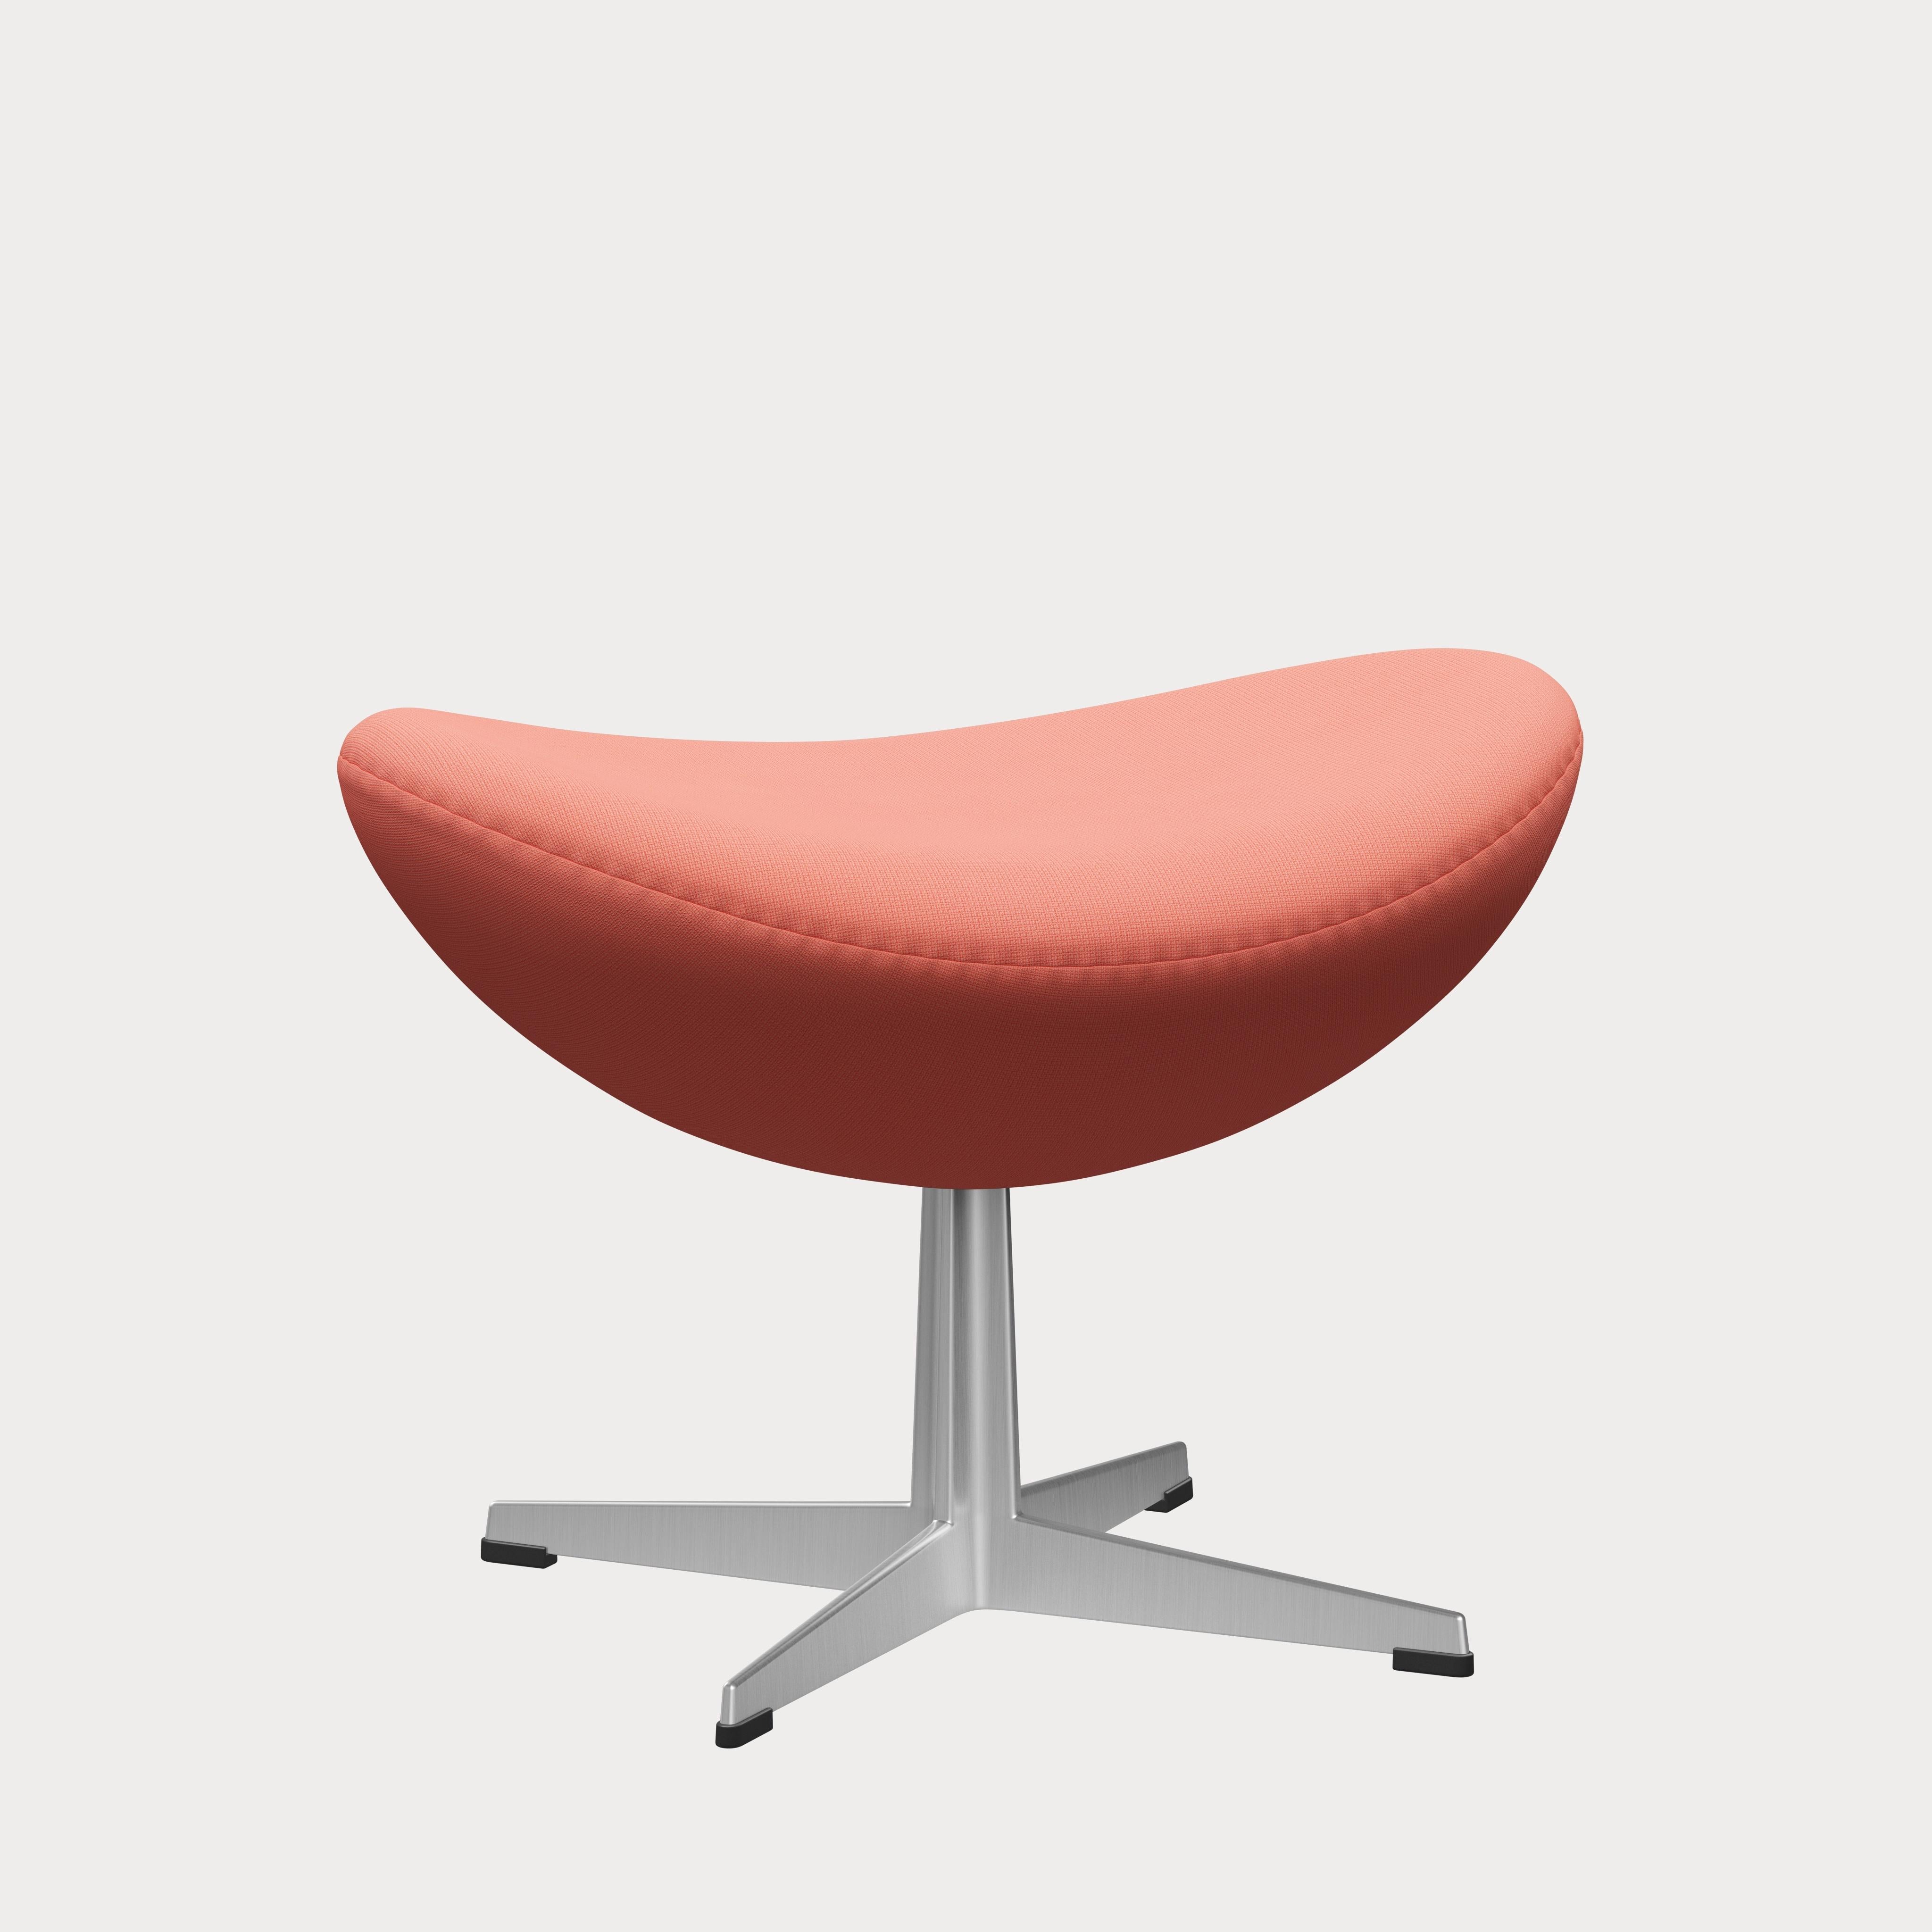 Arne Jacobsen 'Egg' Footstool for Fritz Hansen in Fabric Upholstery (Cat. 1) For Sale 5